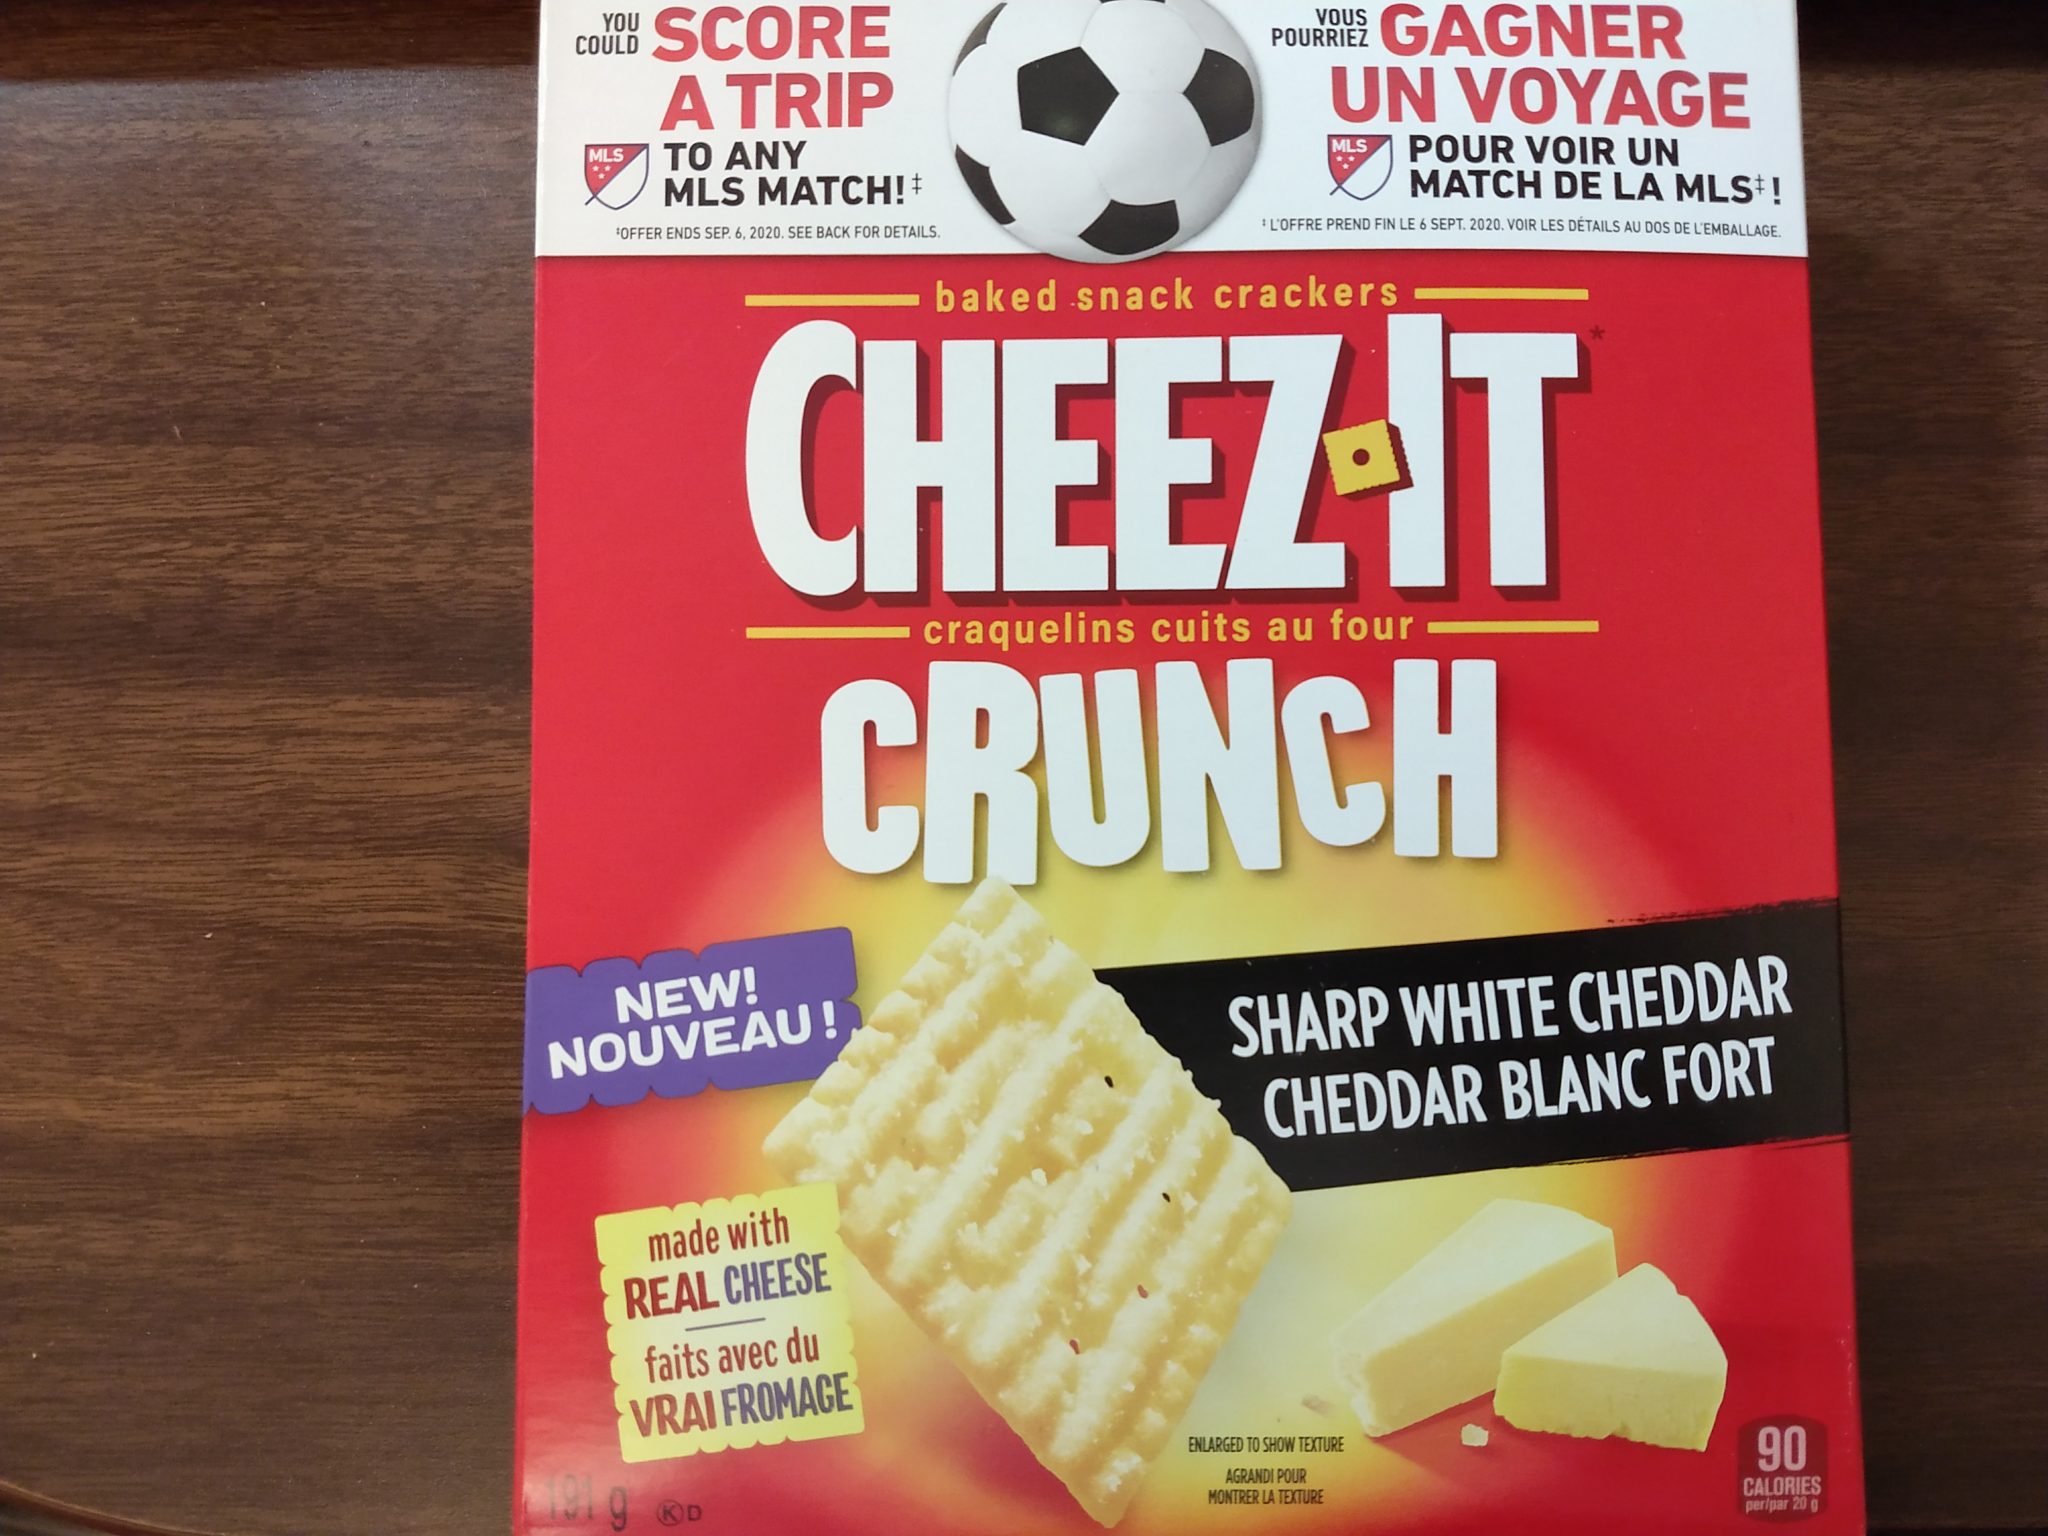 Cheez-It Crunch – Sharp White Cheddar